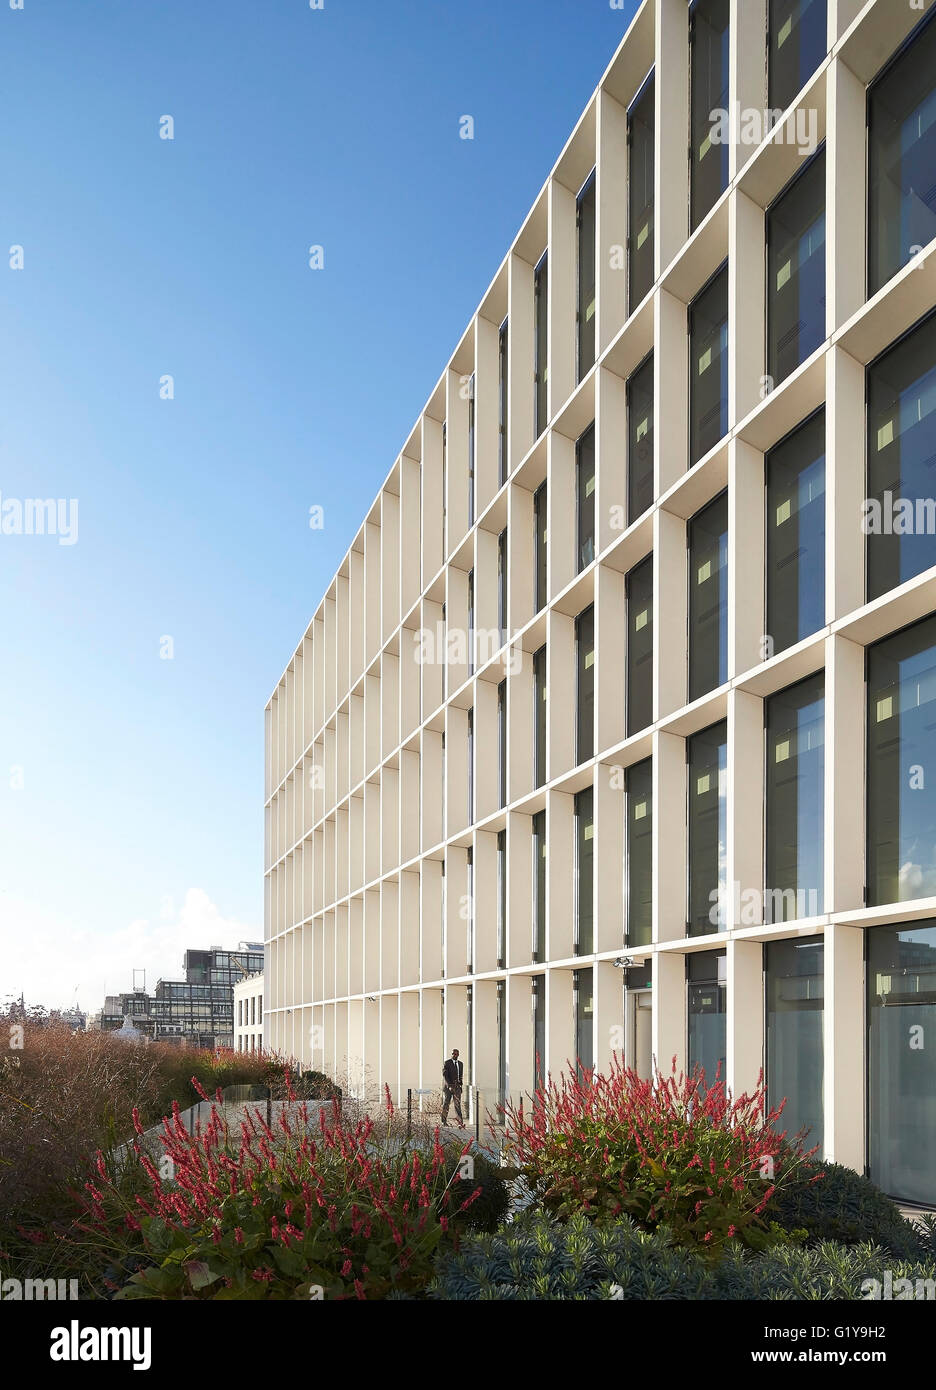 Lala. Un nouveau Ludgate, Londres, Royaume-Uni. Architecte : Fletcher Priest Architects s.r.l., 2016. Banque D'Images